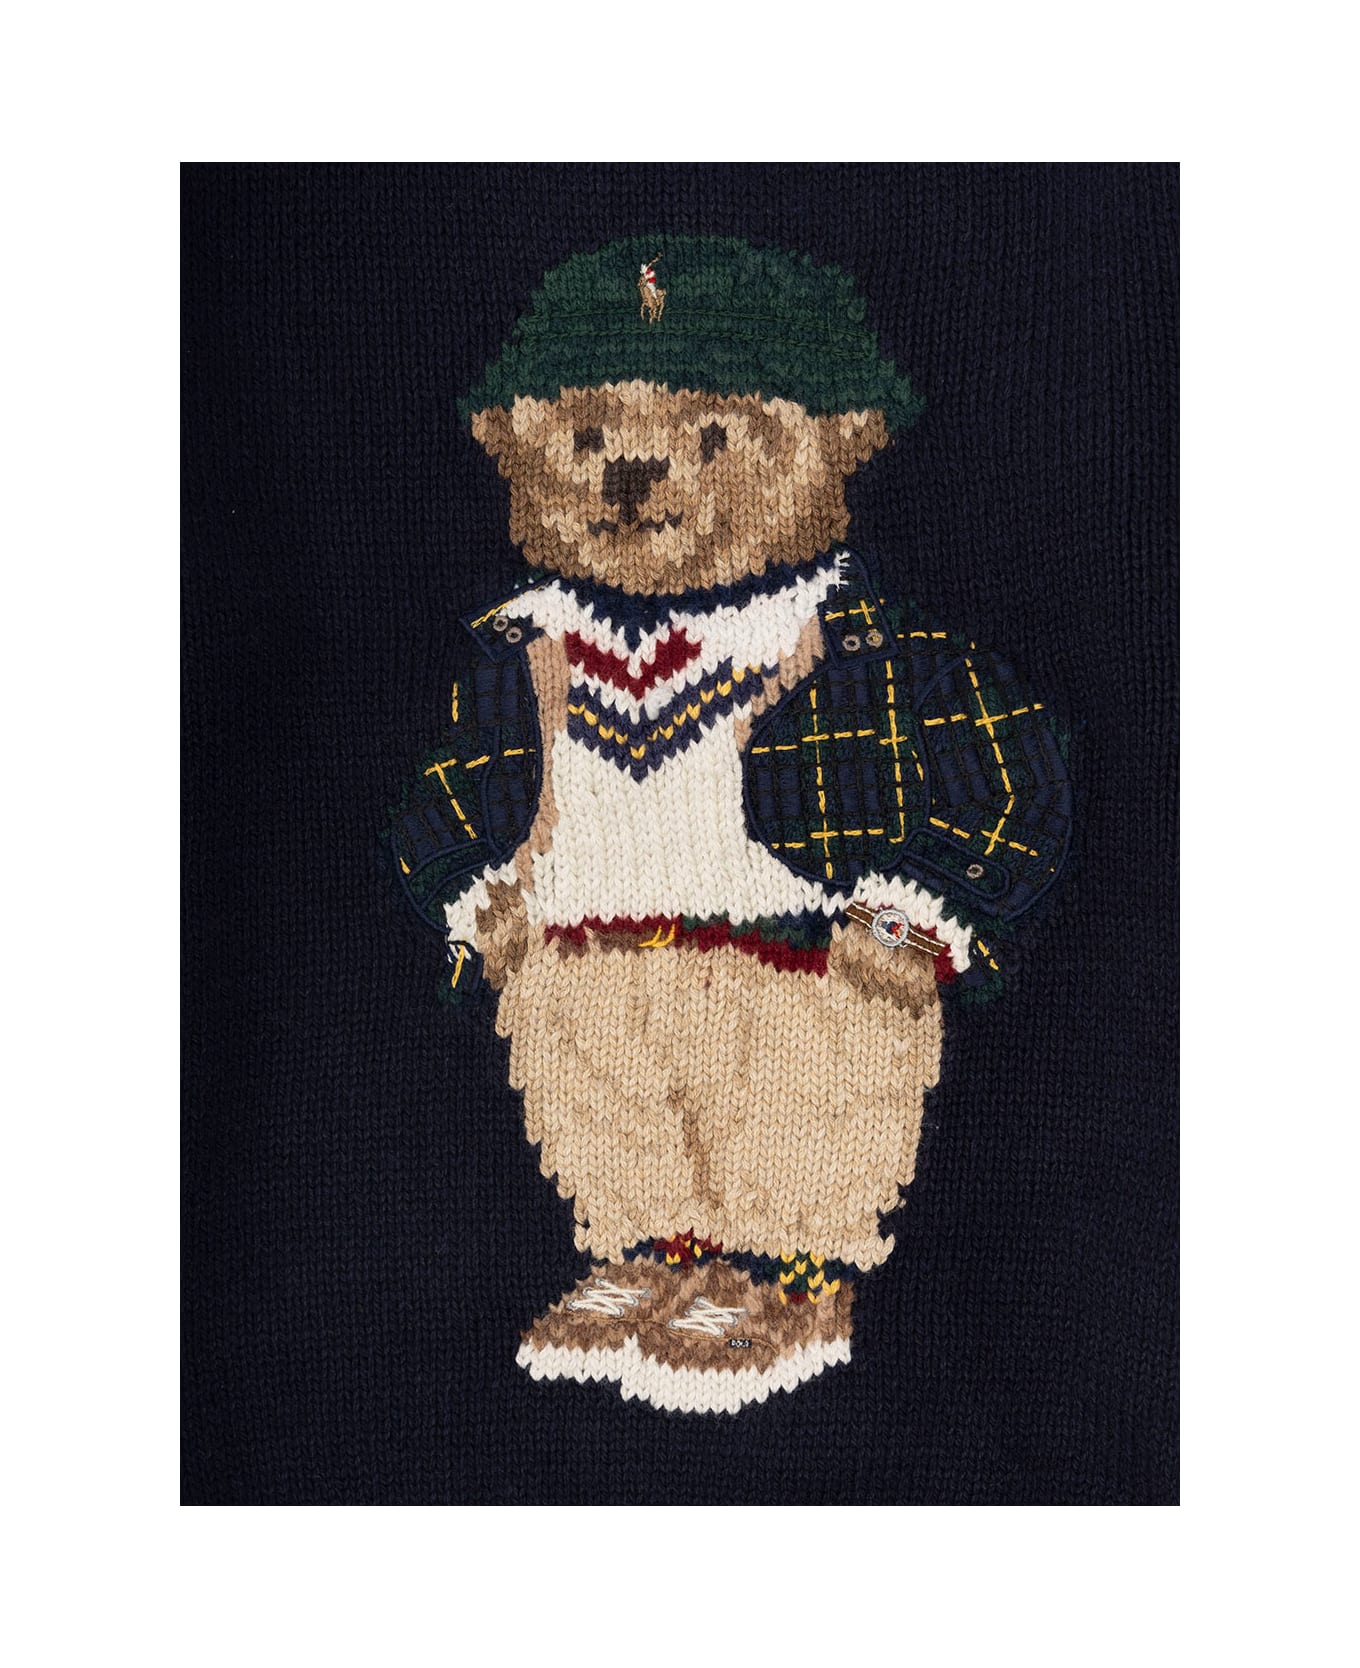 Ralph Lauren Ls Bear Sweater Pullover